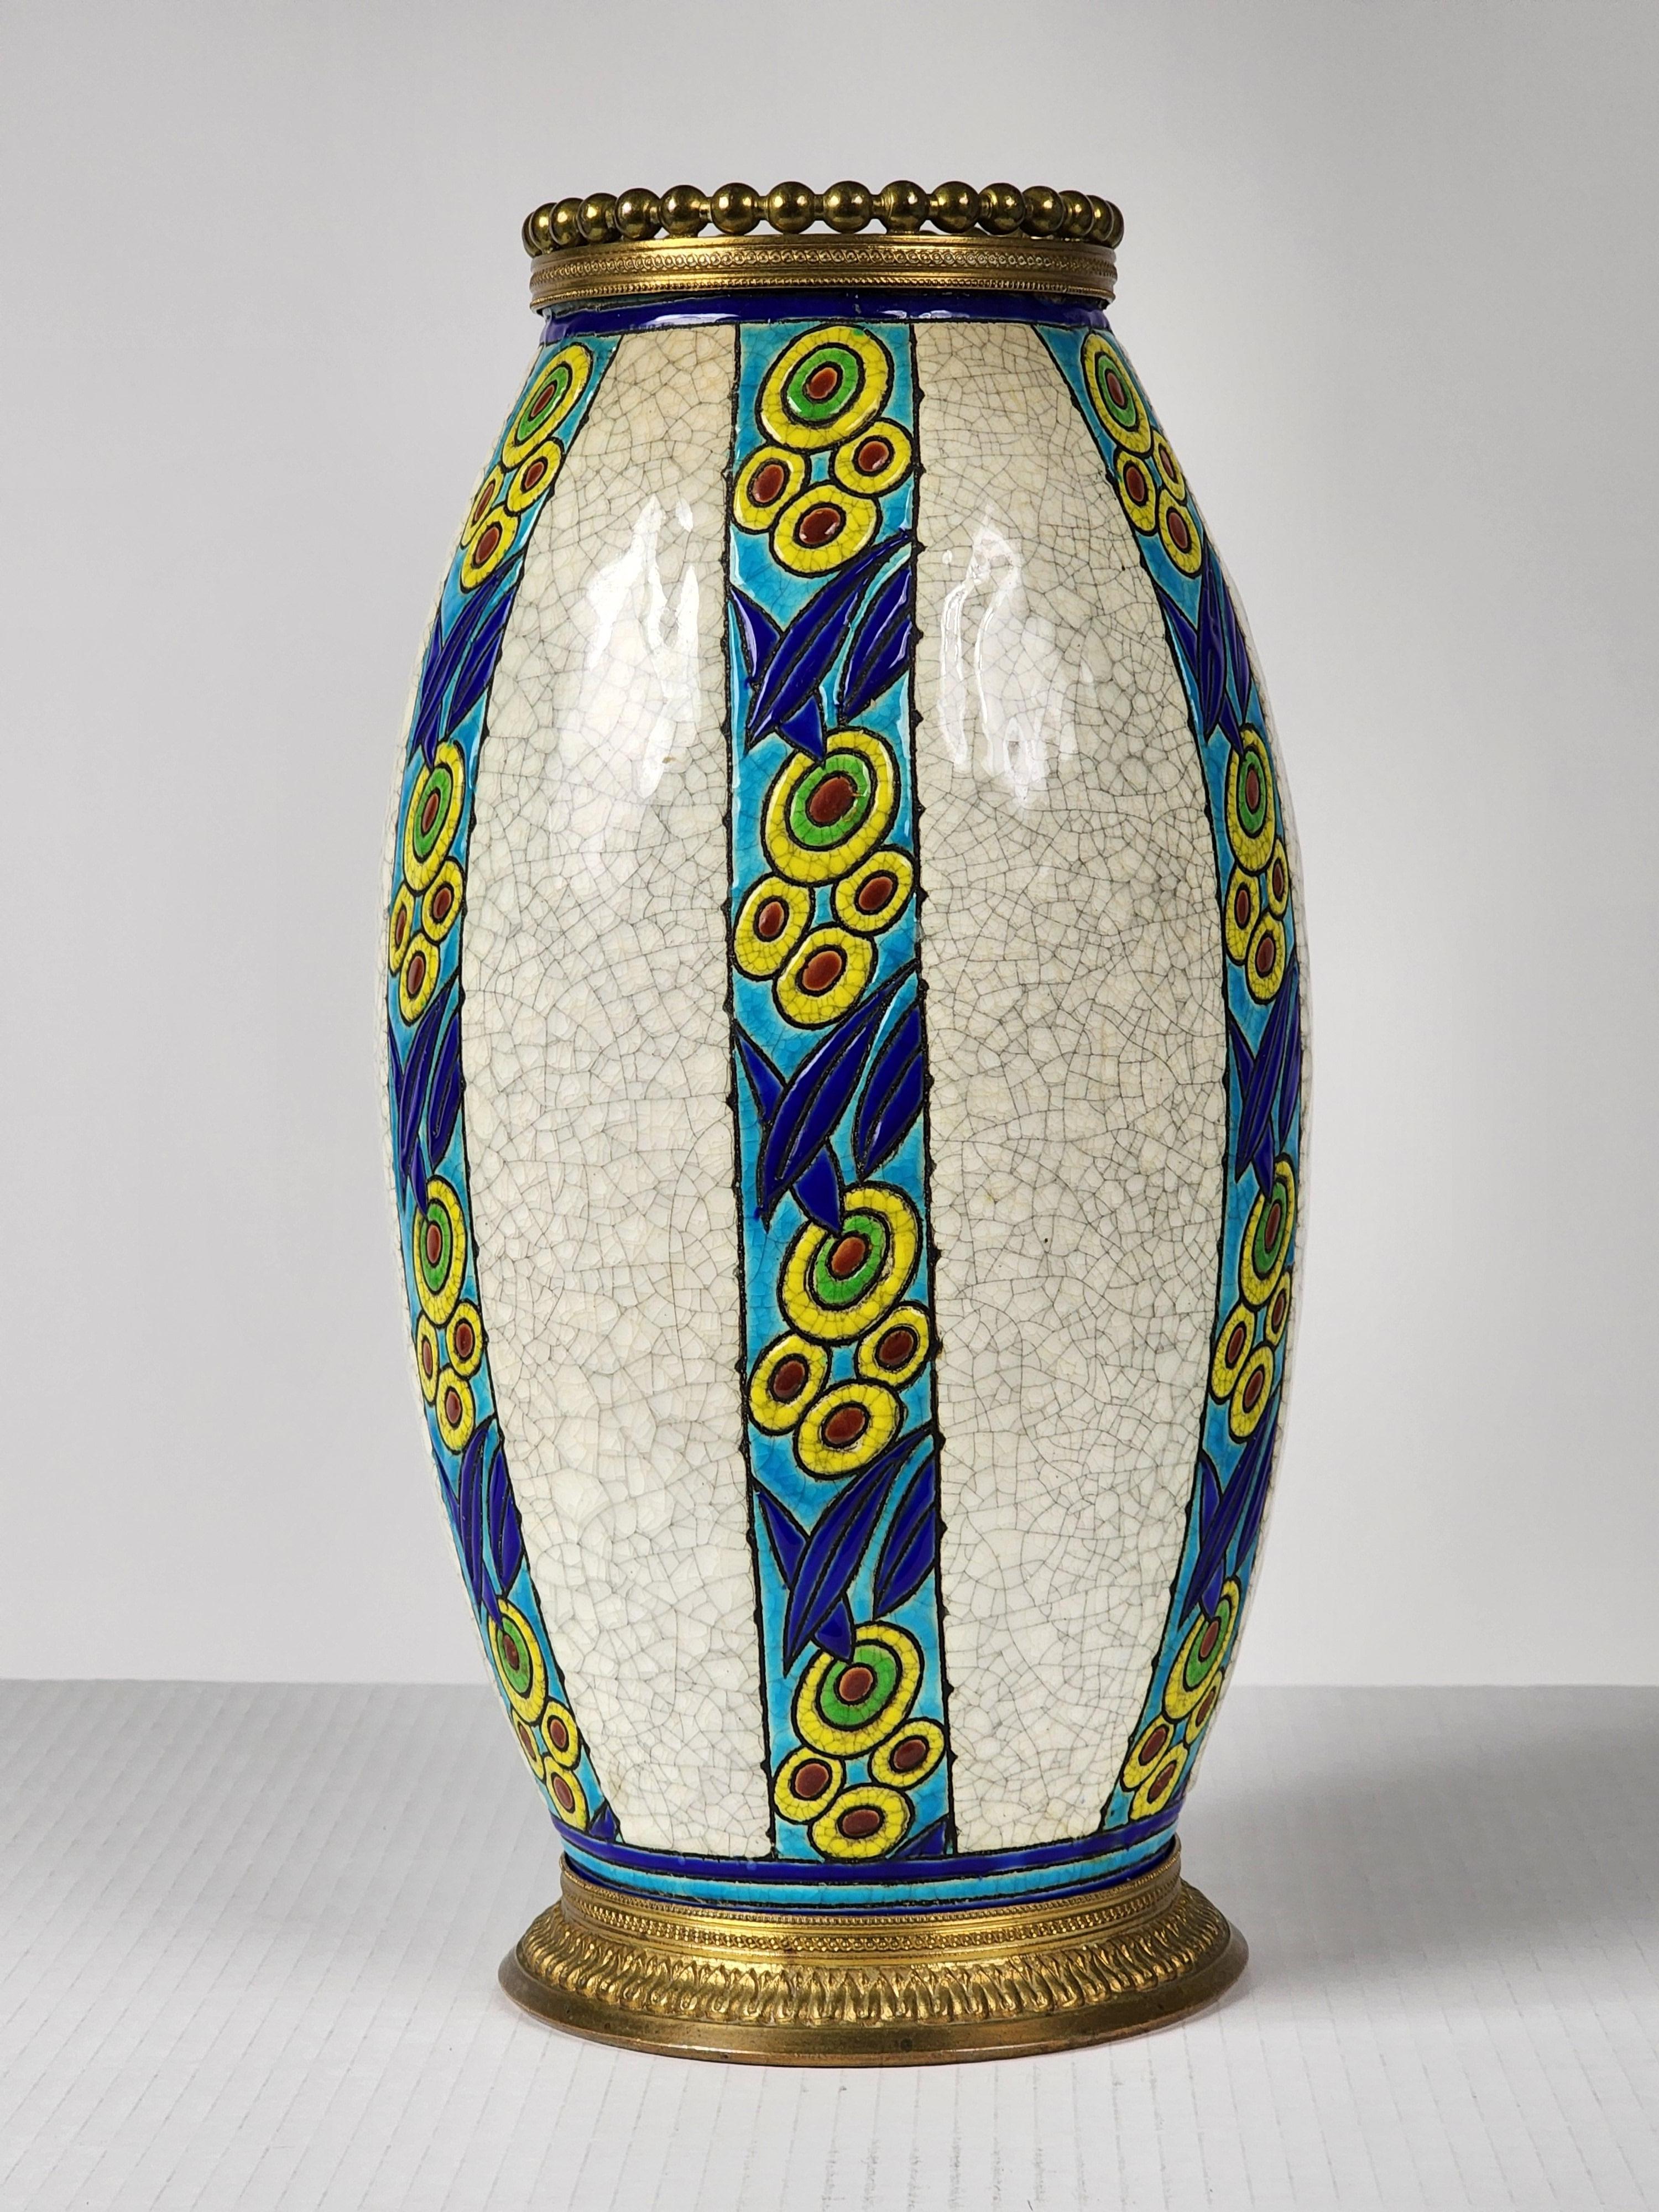 Seltene  Version der Charles Catteau Vase mit feiner, massiver Messingverzierung. 

Hergestellt in Belgien für Boch Frères Keramis, Modell 895 D. 947

Die Krone auf der Oberseite messen 4,25 Zoll an der breitesten Stelle.

